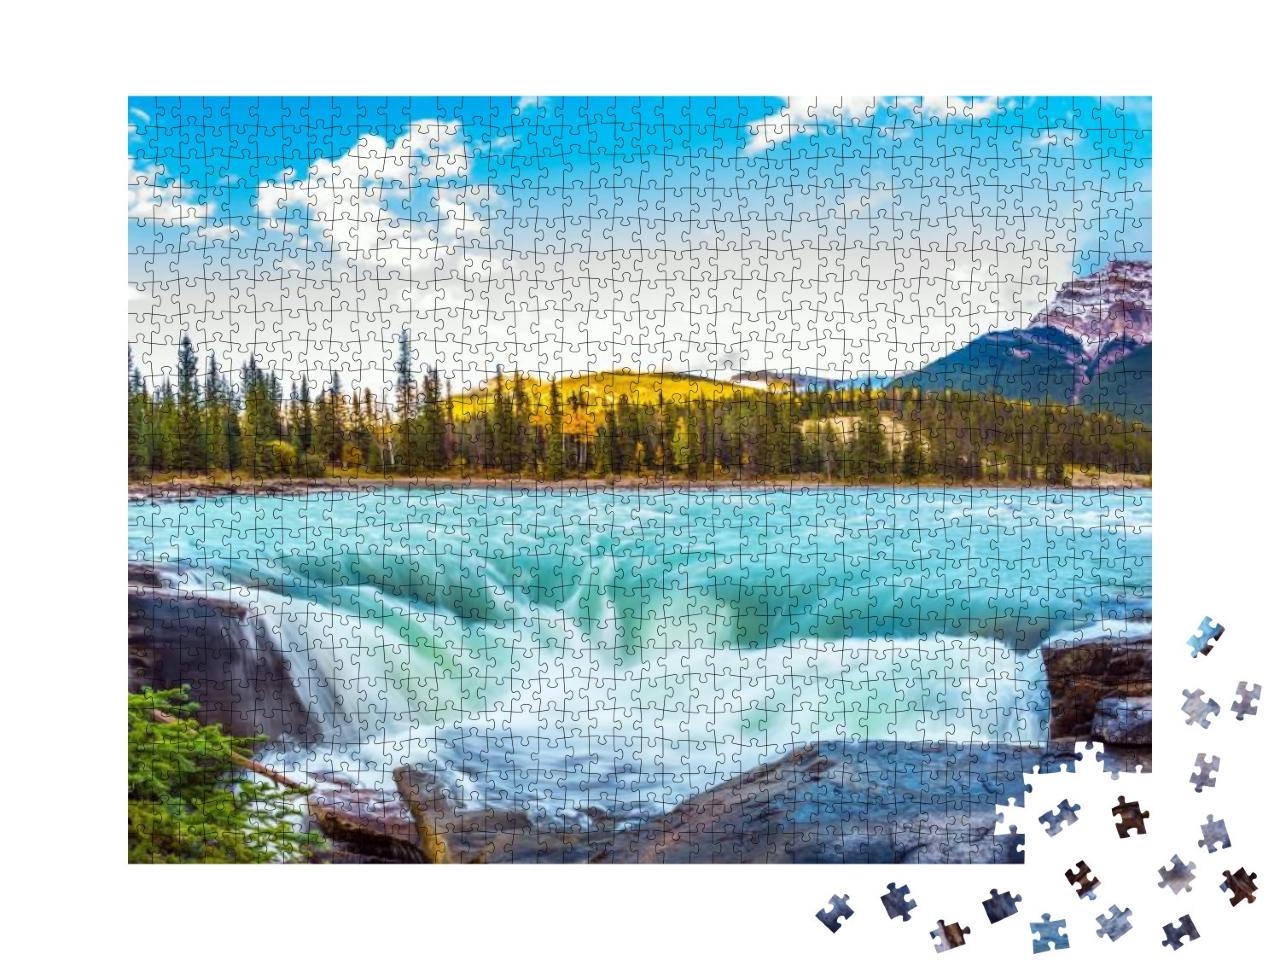 Puzzle 1000 Teile „Jasper Park, Kanada“